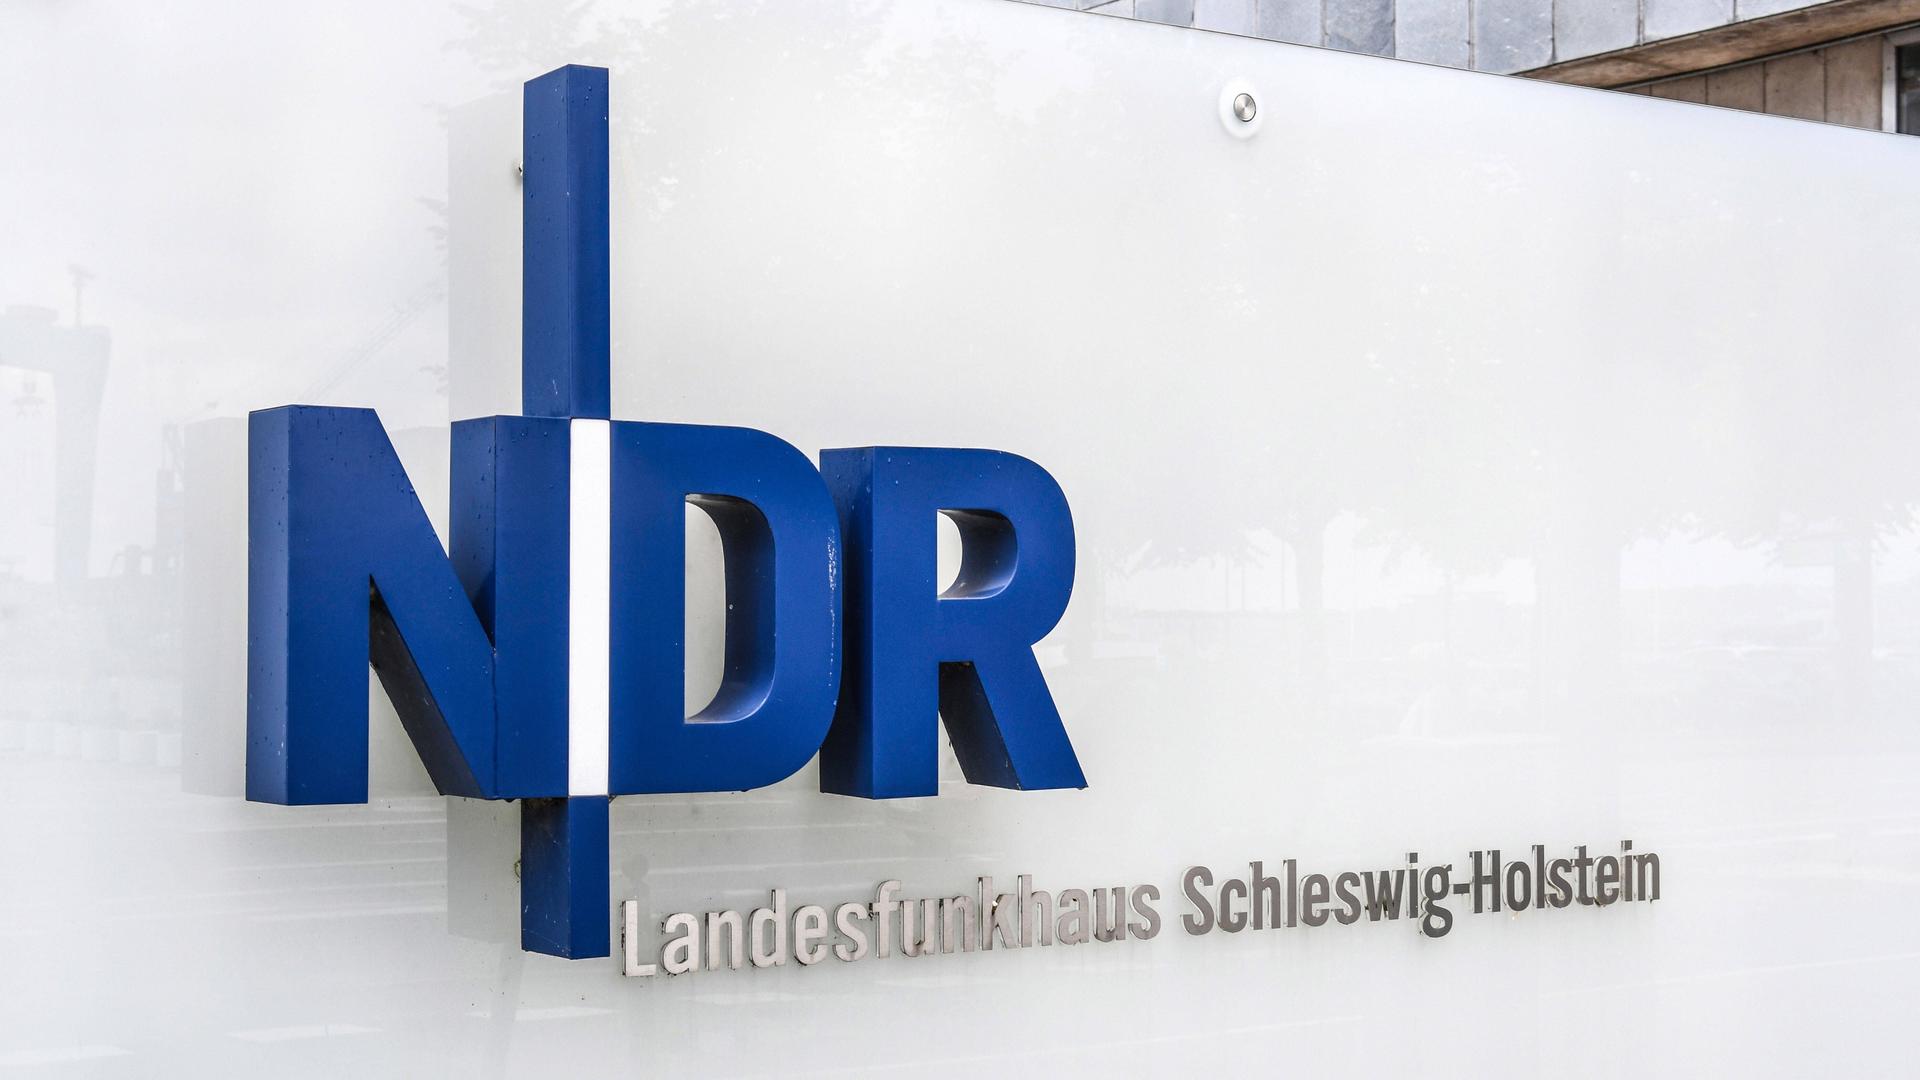 NDR Logo Norddeutscher Rundfunk in Grossbuchastaben an der Fassade des Landesfunkhauses in Kiel